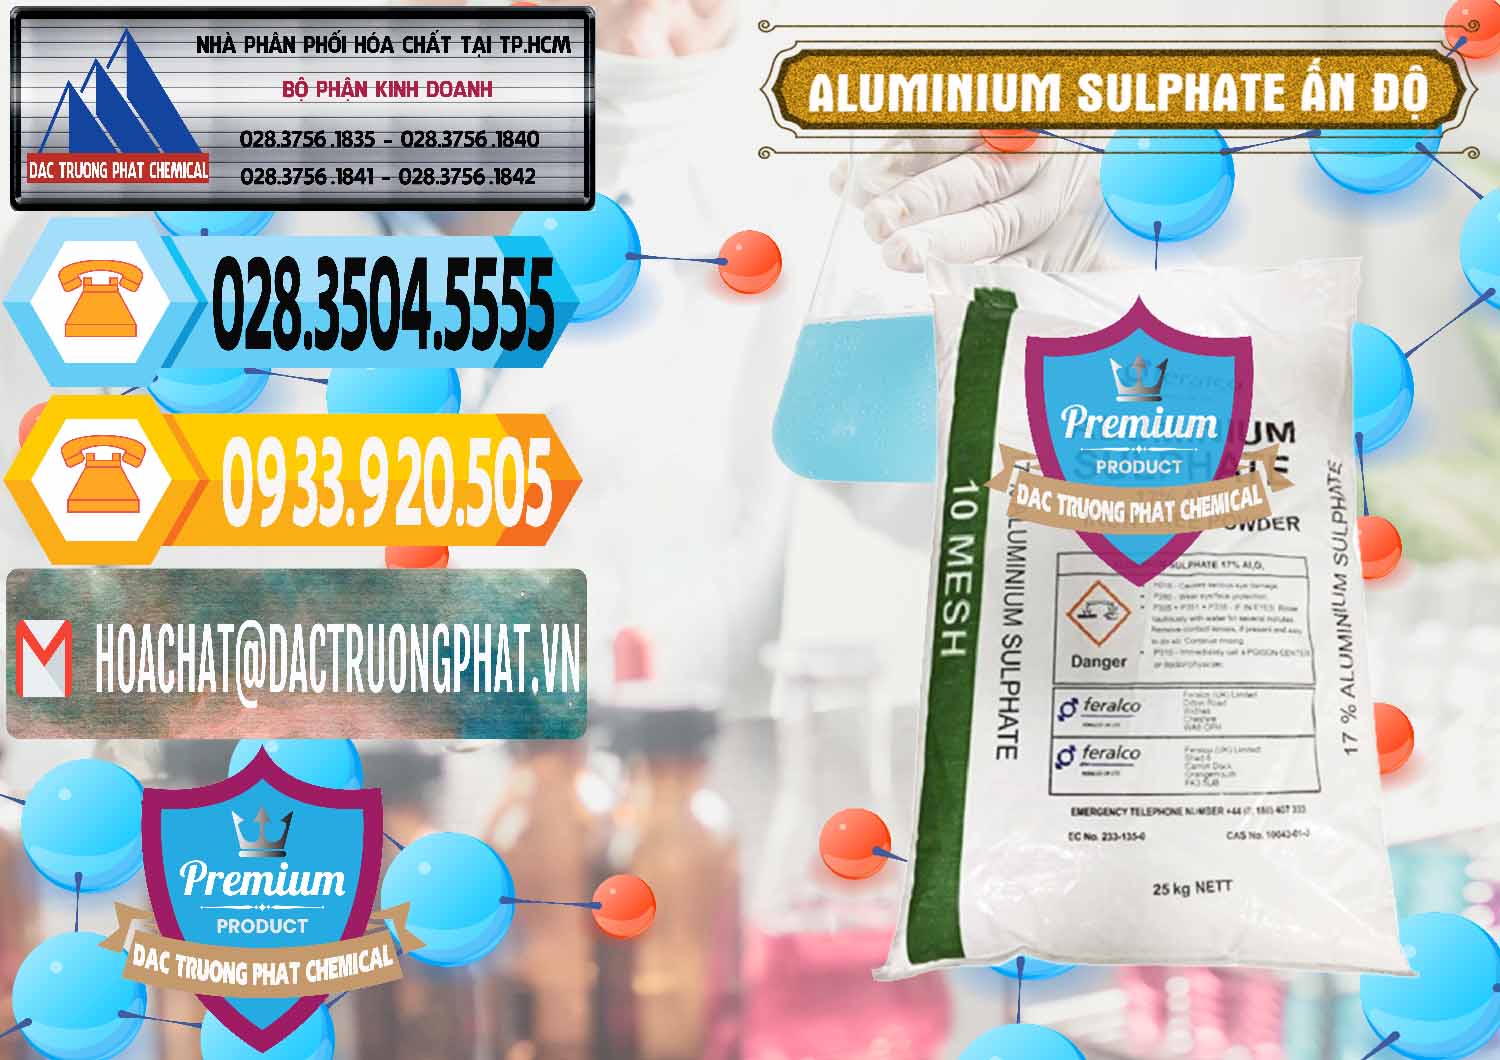 Cty phân phối & bán Phèn Nhôm - Al2(SO4)3 17% Ấn Độ India - 0463 - Nơi cung cấp ( phân phối ) hóa chất tại TP.HCM - hoachattayrua.net